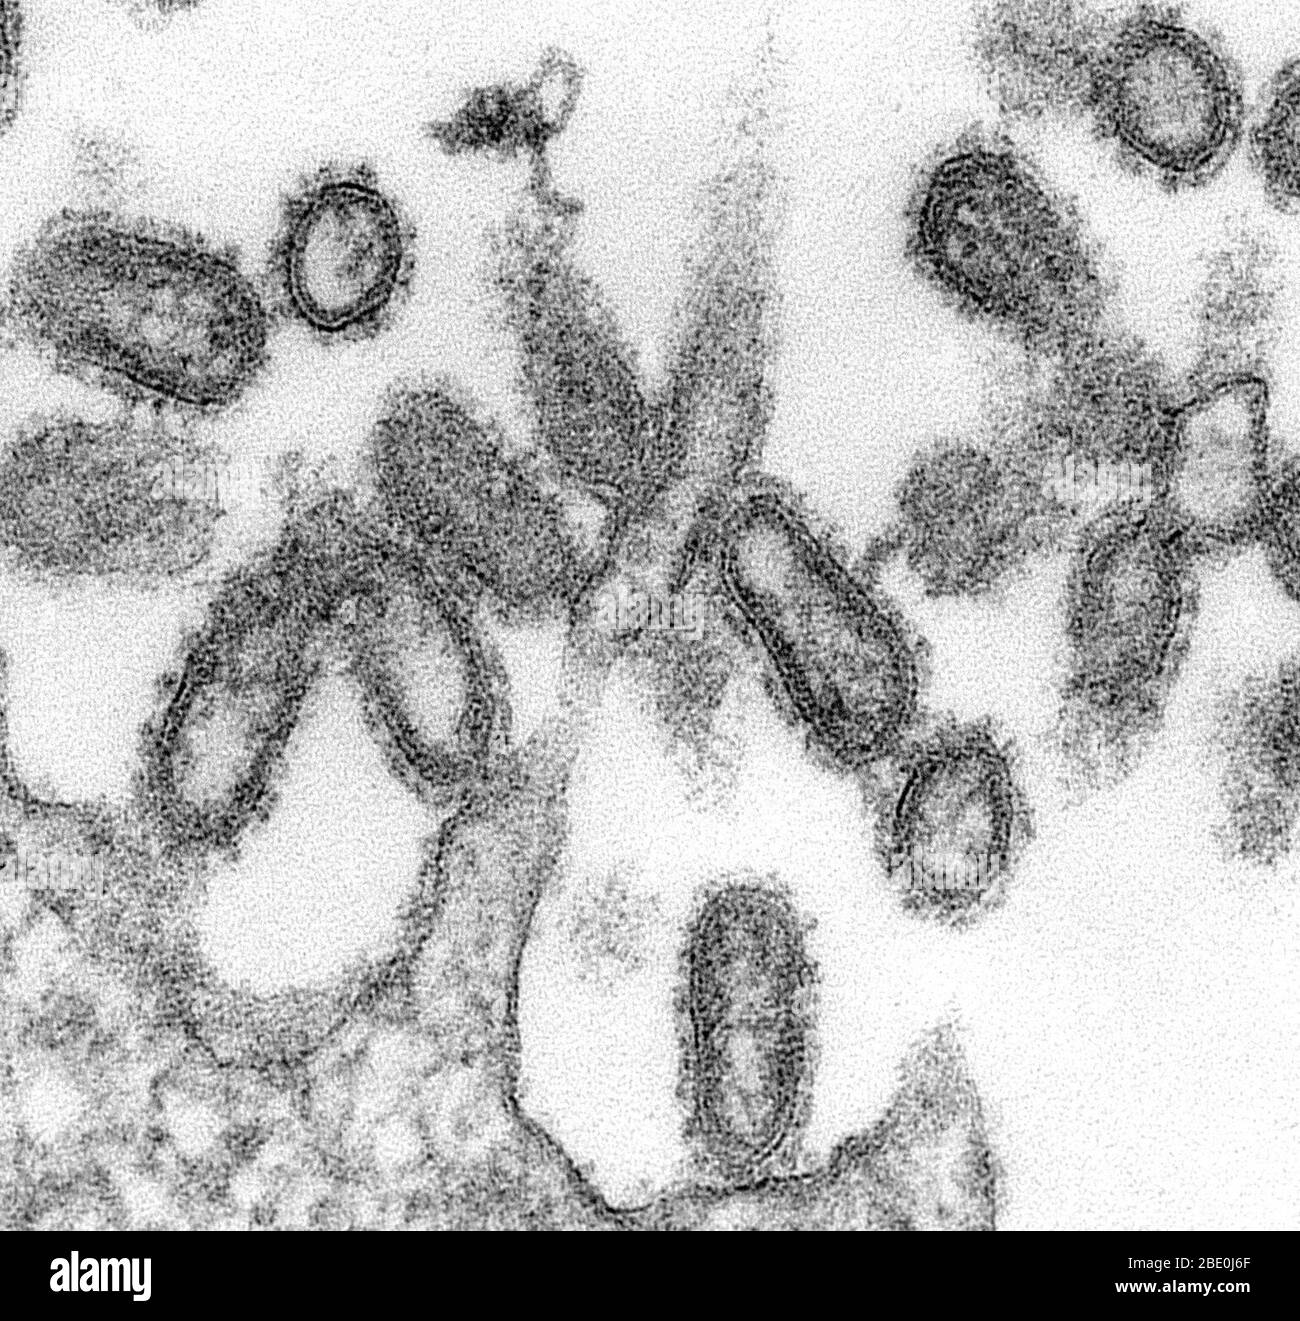 TEM einer ultradünnen Probe zeigte einige der ultrastrukturellen morphologischen Merkmale, die bei 1918 Grippevirionen beobachtet wurden. Die prominenten Oberflächenprojektionen auf den Virionen bestehen entweder aus dem Hämagglutinin oder aus der Neuraminidase-Art von Glykoproteinen. Zusammengesetzt aus, was aussah wie Punkte oder Tubuli, war eine dichte Hülle bekannt als Capsid, die jedes Virion Nukleinsäure Bestandteile umgeben. Die Grippe ist eine ansteckende Atemwegserkrankung, die durch Influenzaviren verursacht wird. Es kann leichte bis schwere Krankheit verursachen und manchmal zum Tod führen. Vergrößerung unbekannt. Stockfoto